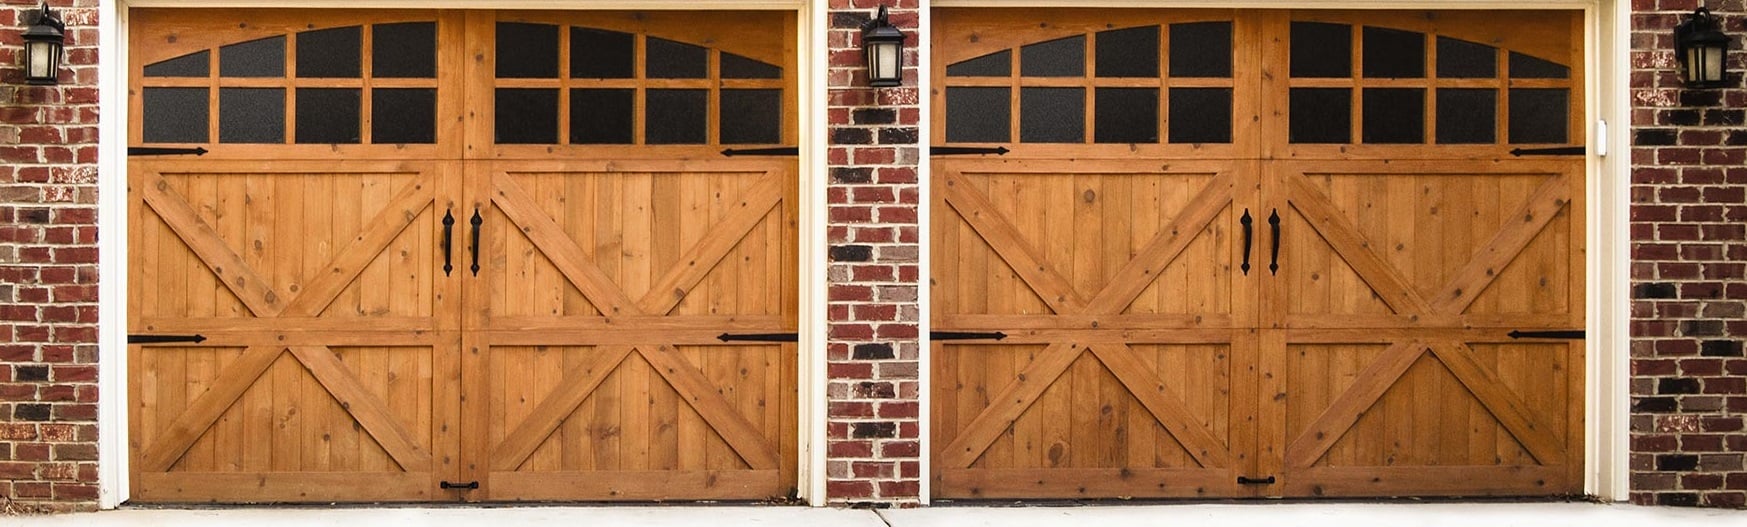 Clopay Carriage House Wood Garage Door